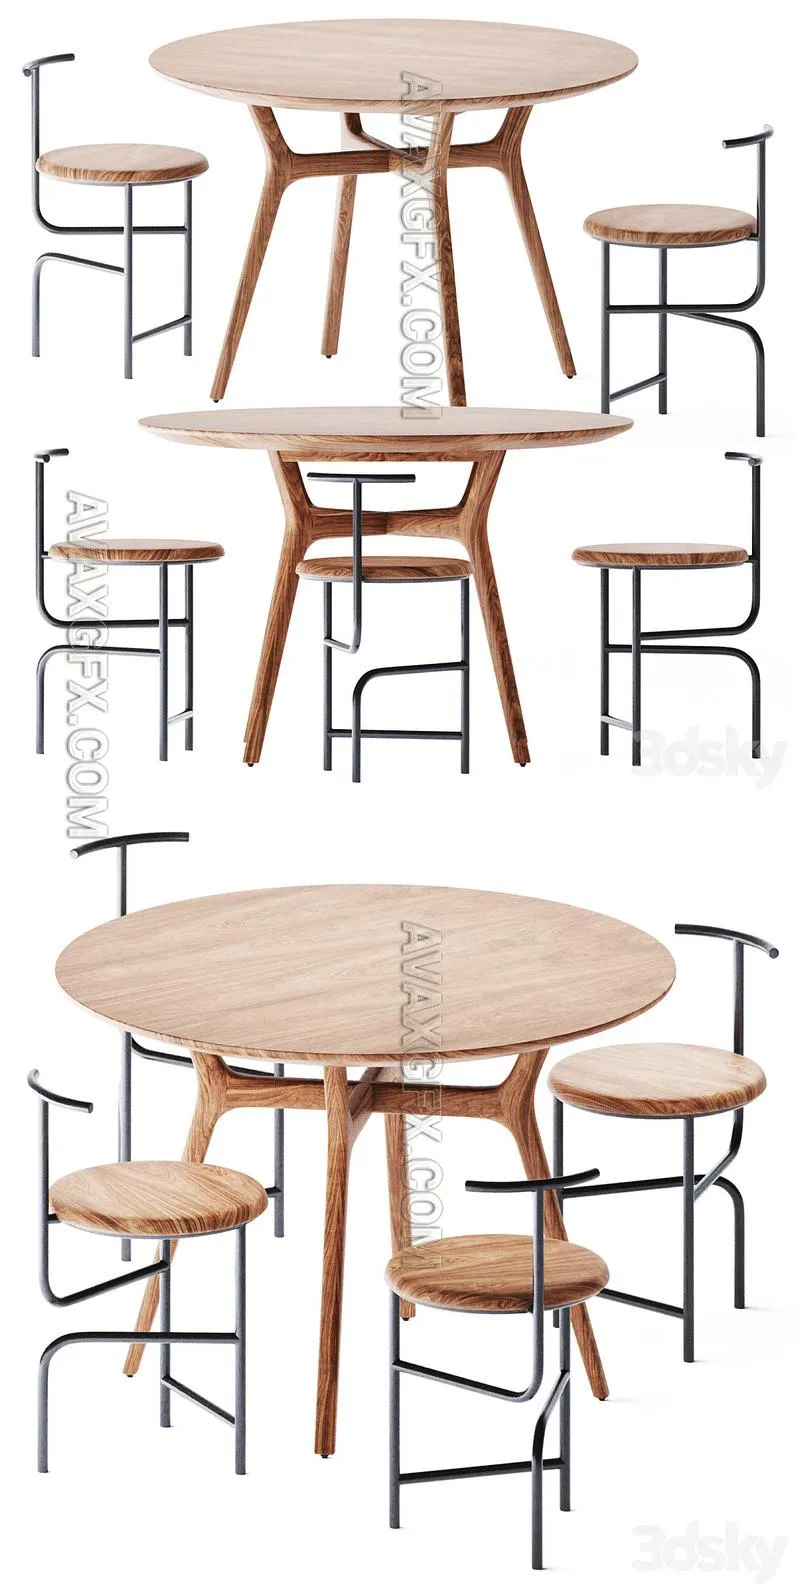 Ren Round Wooden Table by Stellar Works - 3D Model